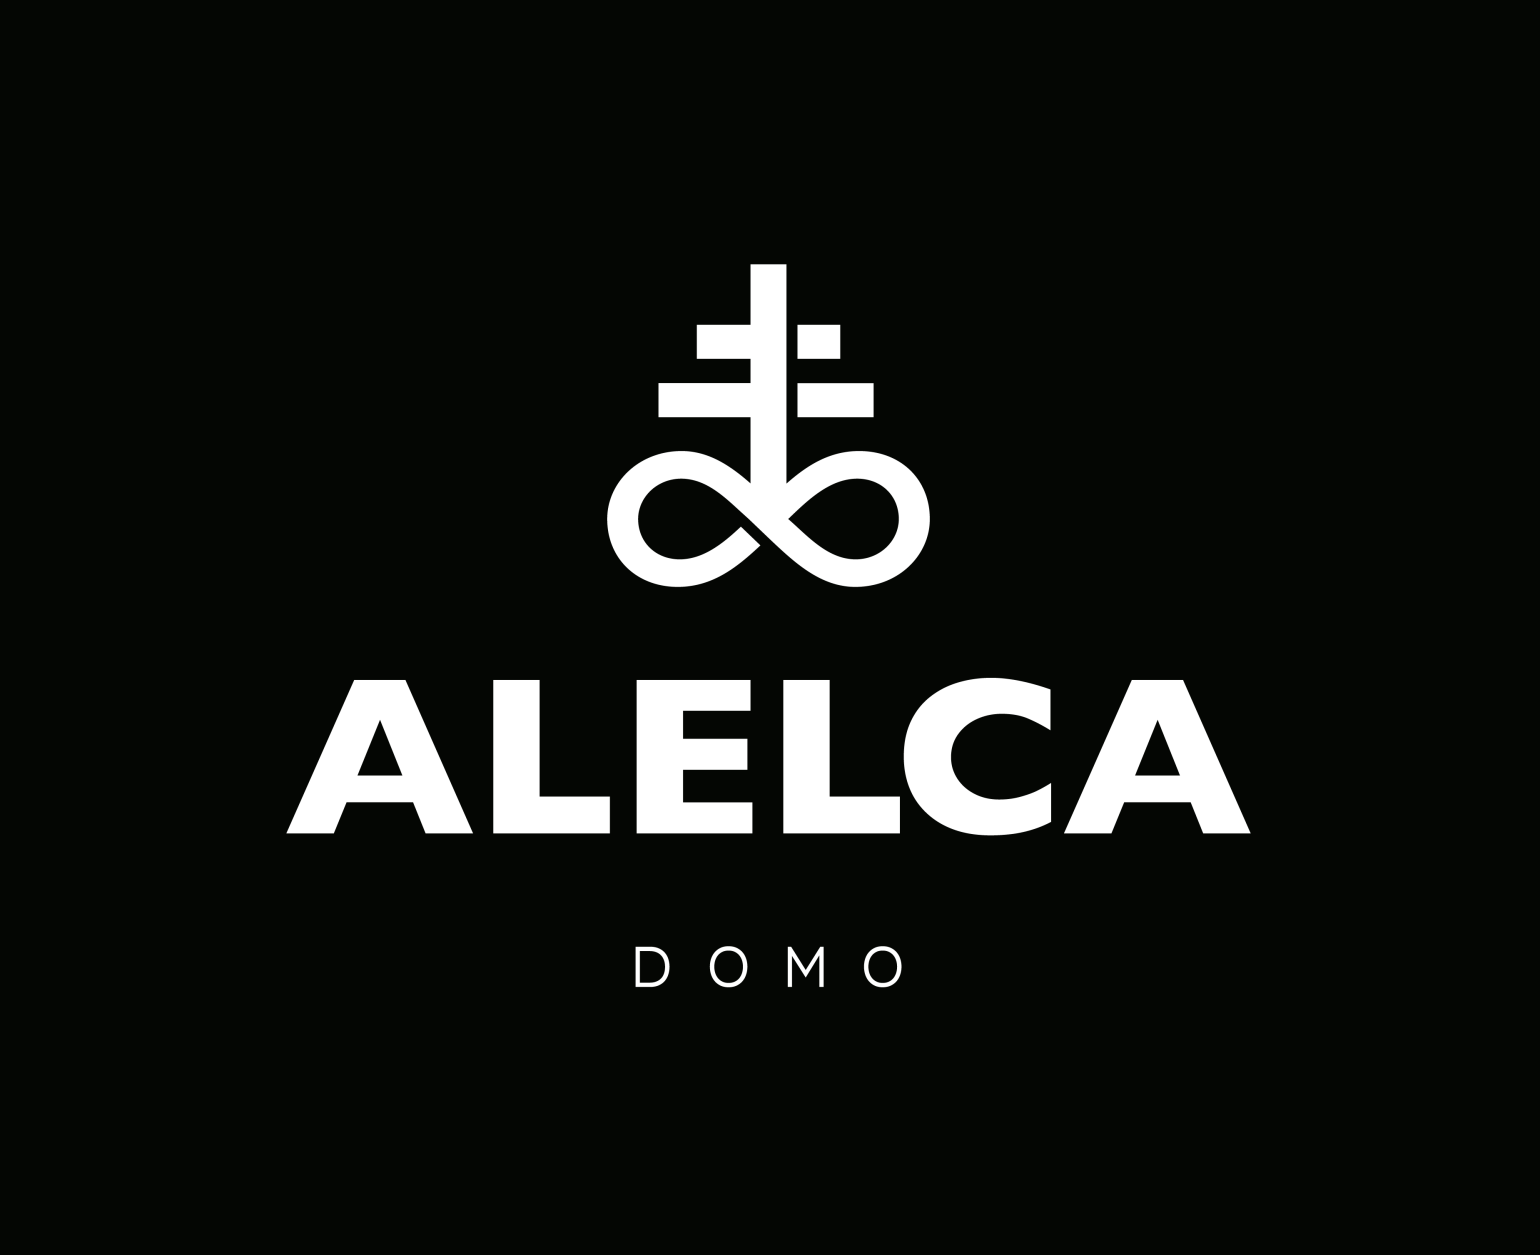 alelca-domo-logo-negativo-bg-black-01